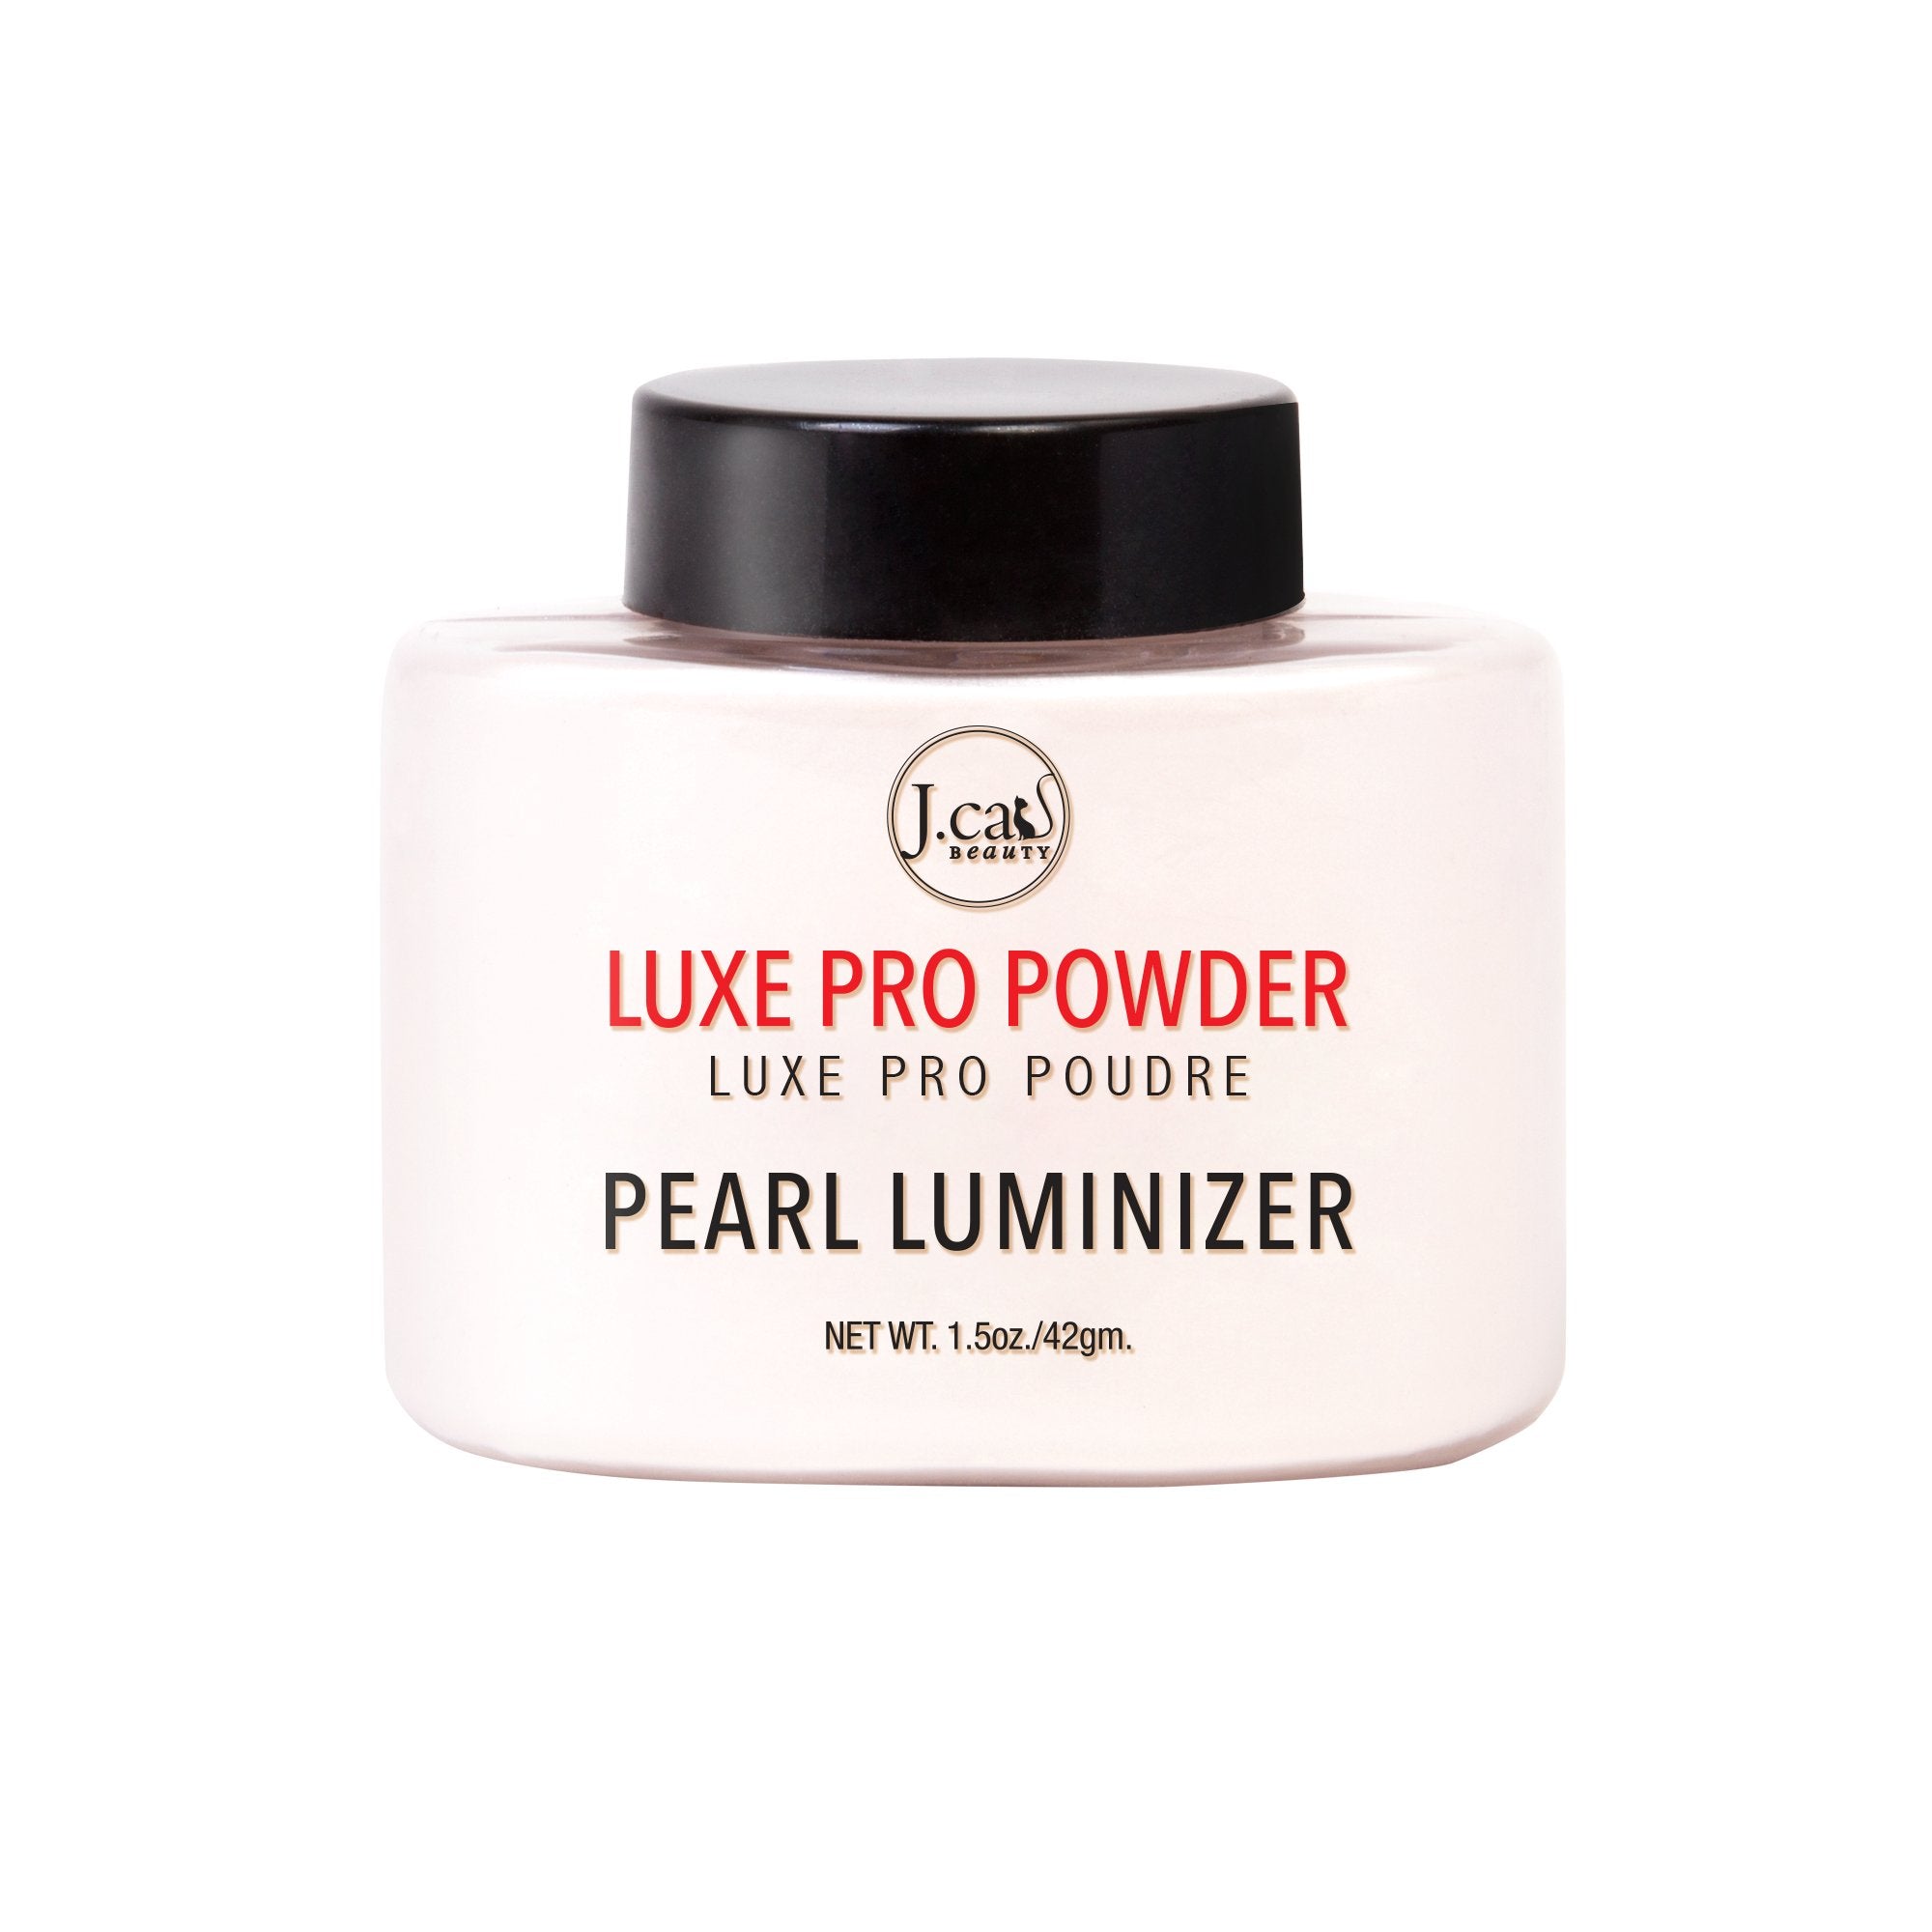 J. Cat Beauty Luxe Pro Powder